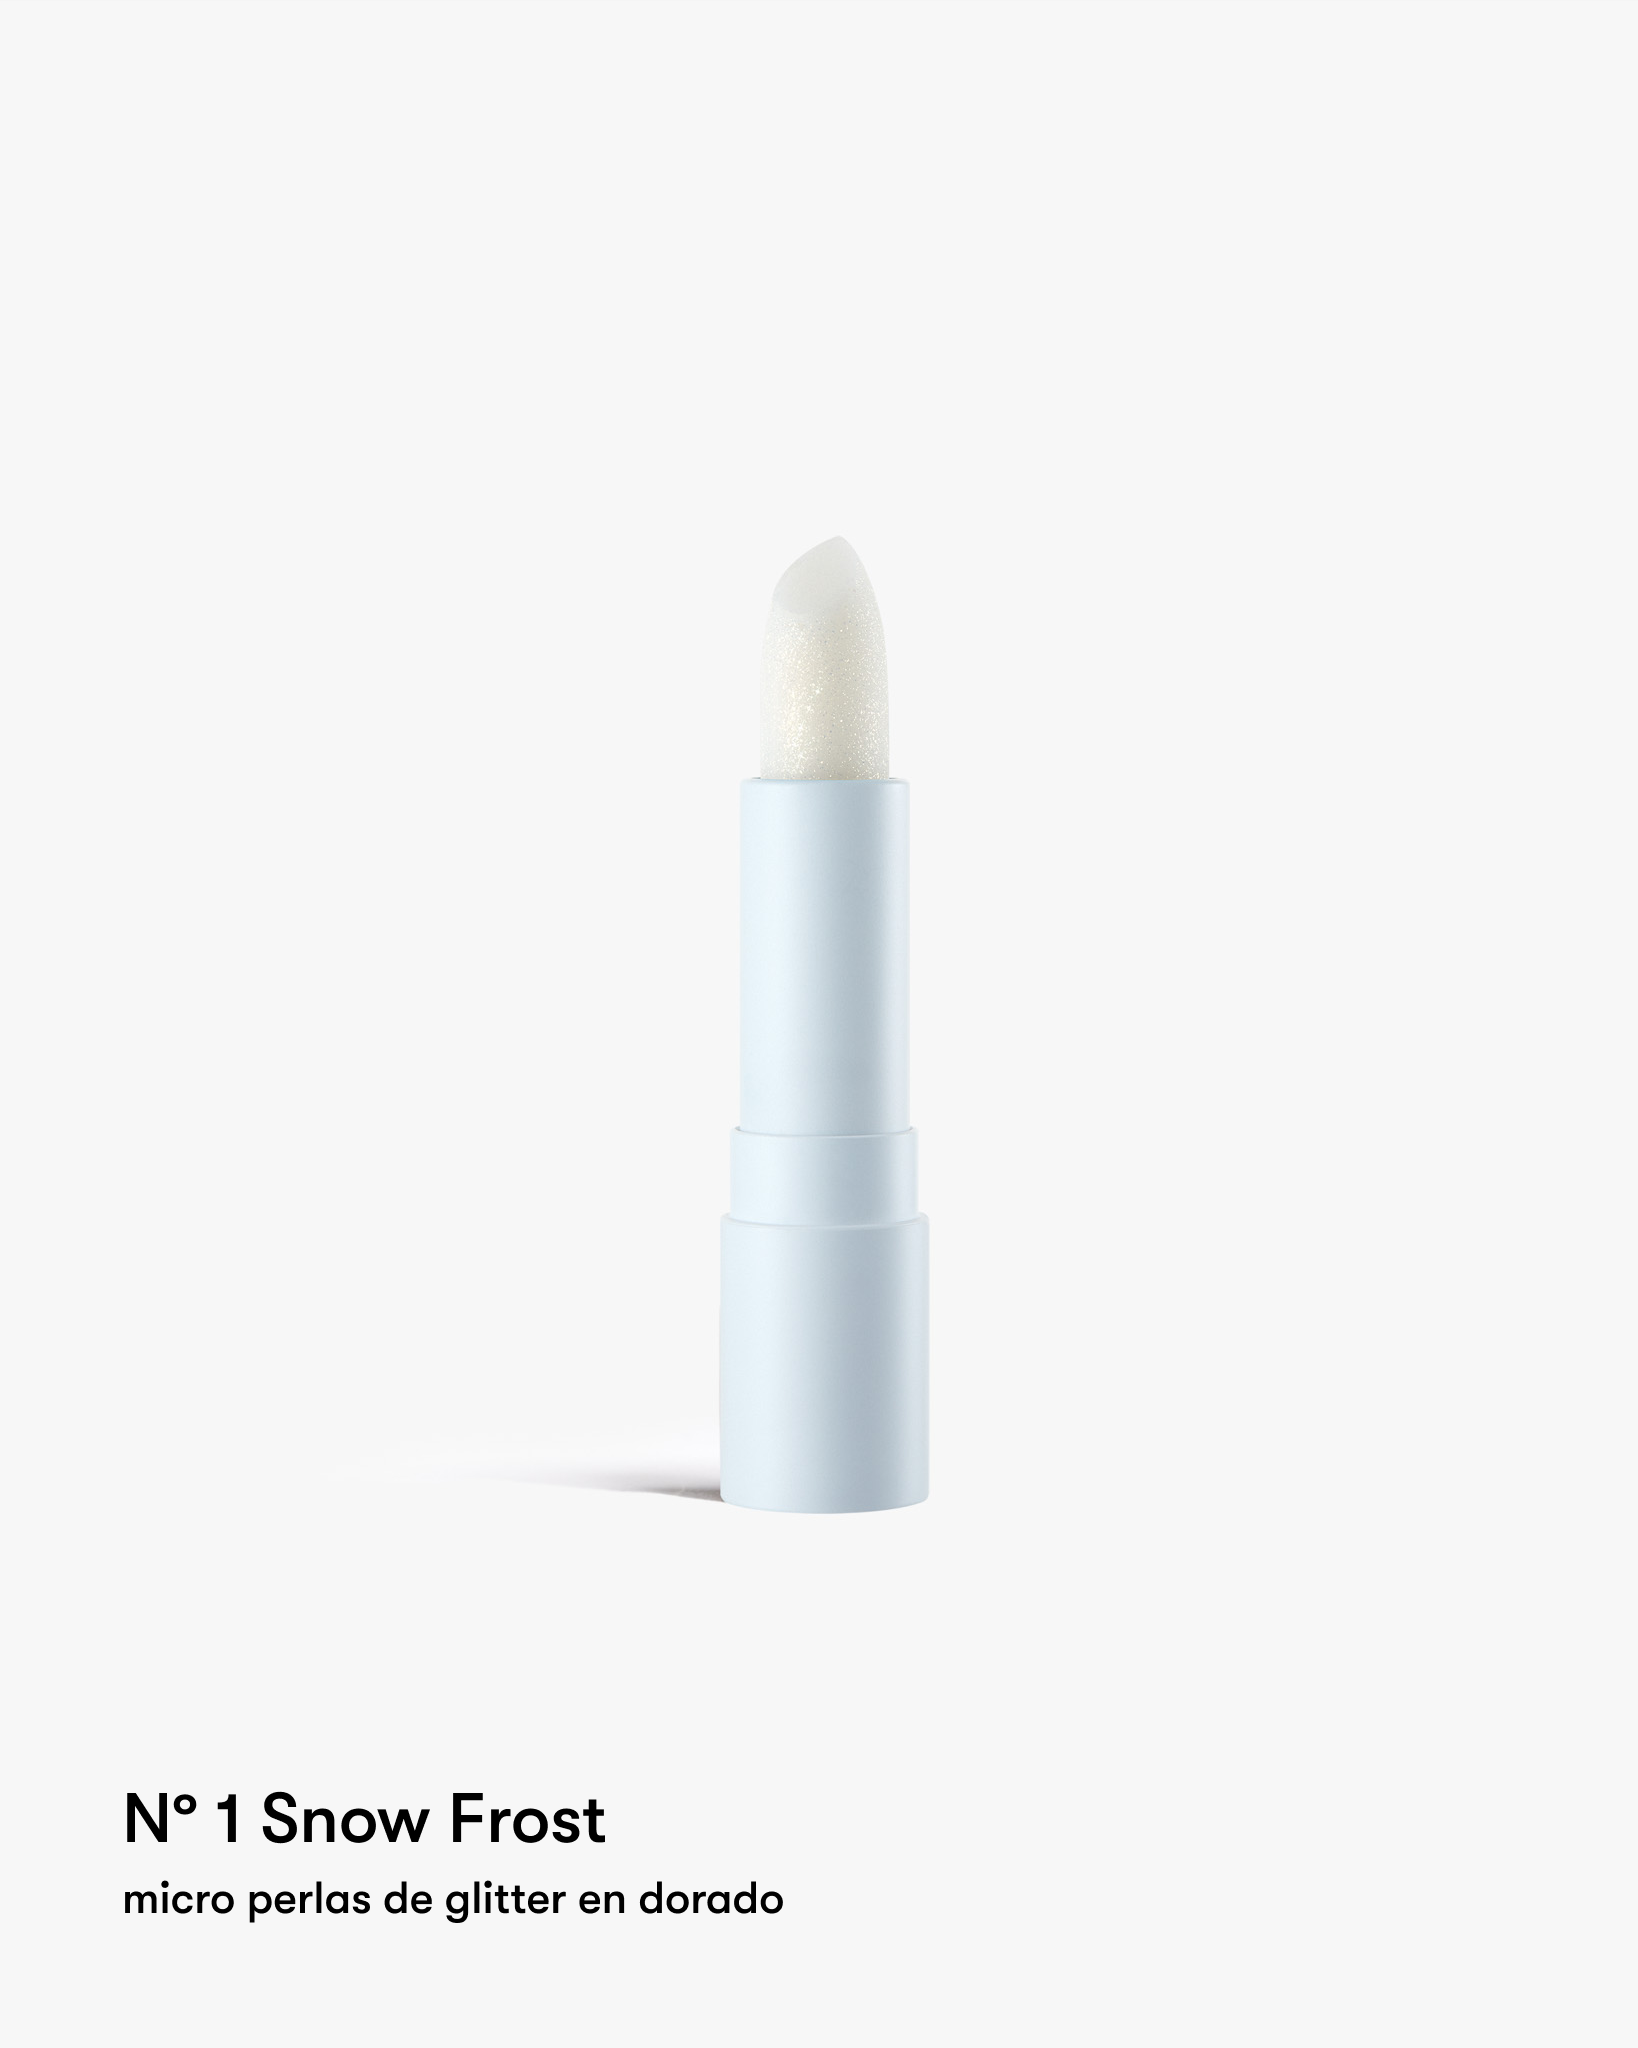 Bálsamo labial hidratante con suaves partículas de brillo.Nº 1 Snow Frost: tono transparente con perlas 100% doradas, perfecto para un makeup casual donde solo resalten tus labios.